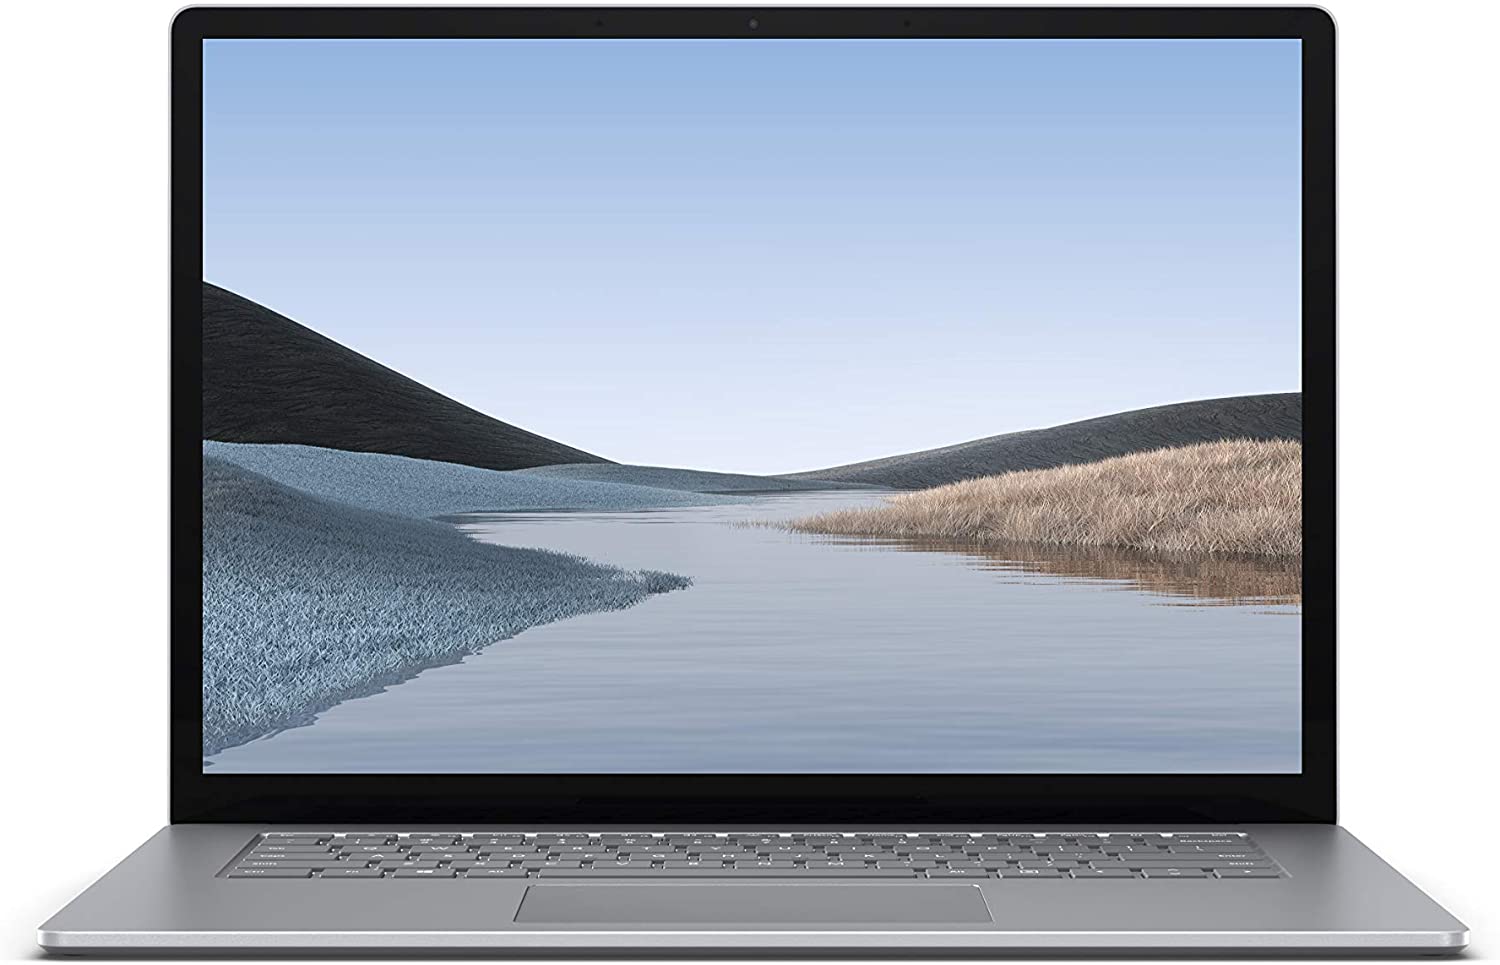 【Amazonタイムセール】Surface Laptop 3 15インチ (AMD Ryzen 5,16GB,256GB)が特価154,616円で販売中